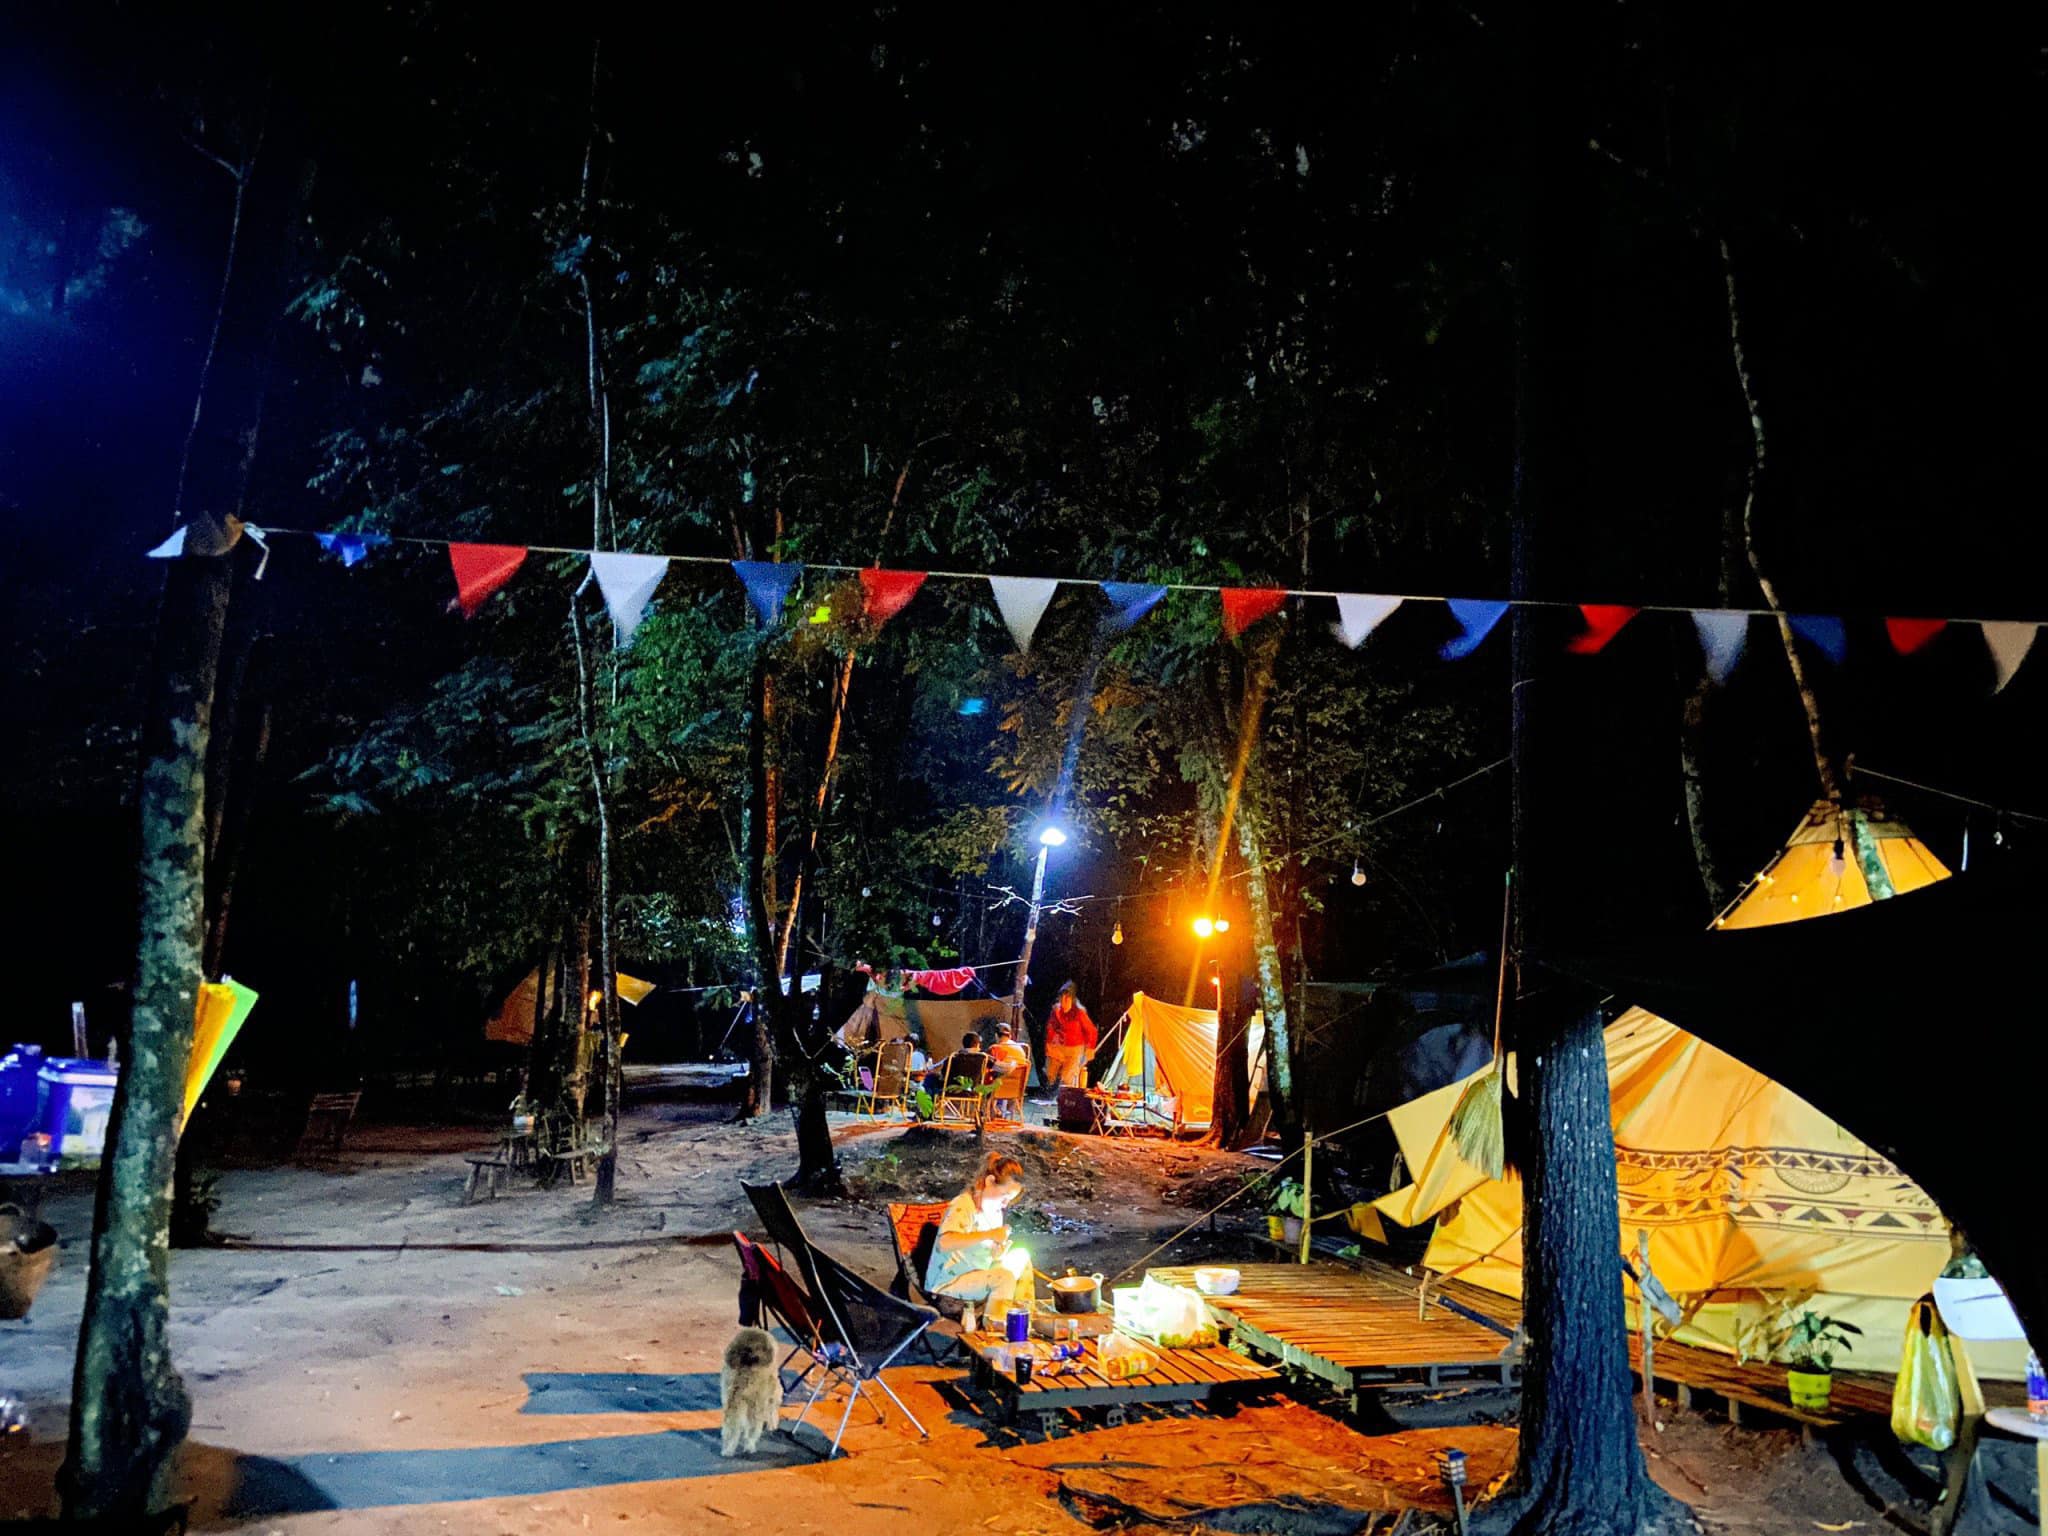 Ong Rừng Camping And Fishing – Vũng Tàu